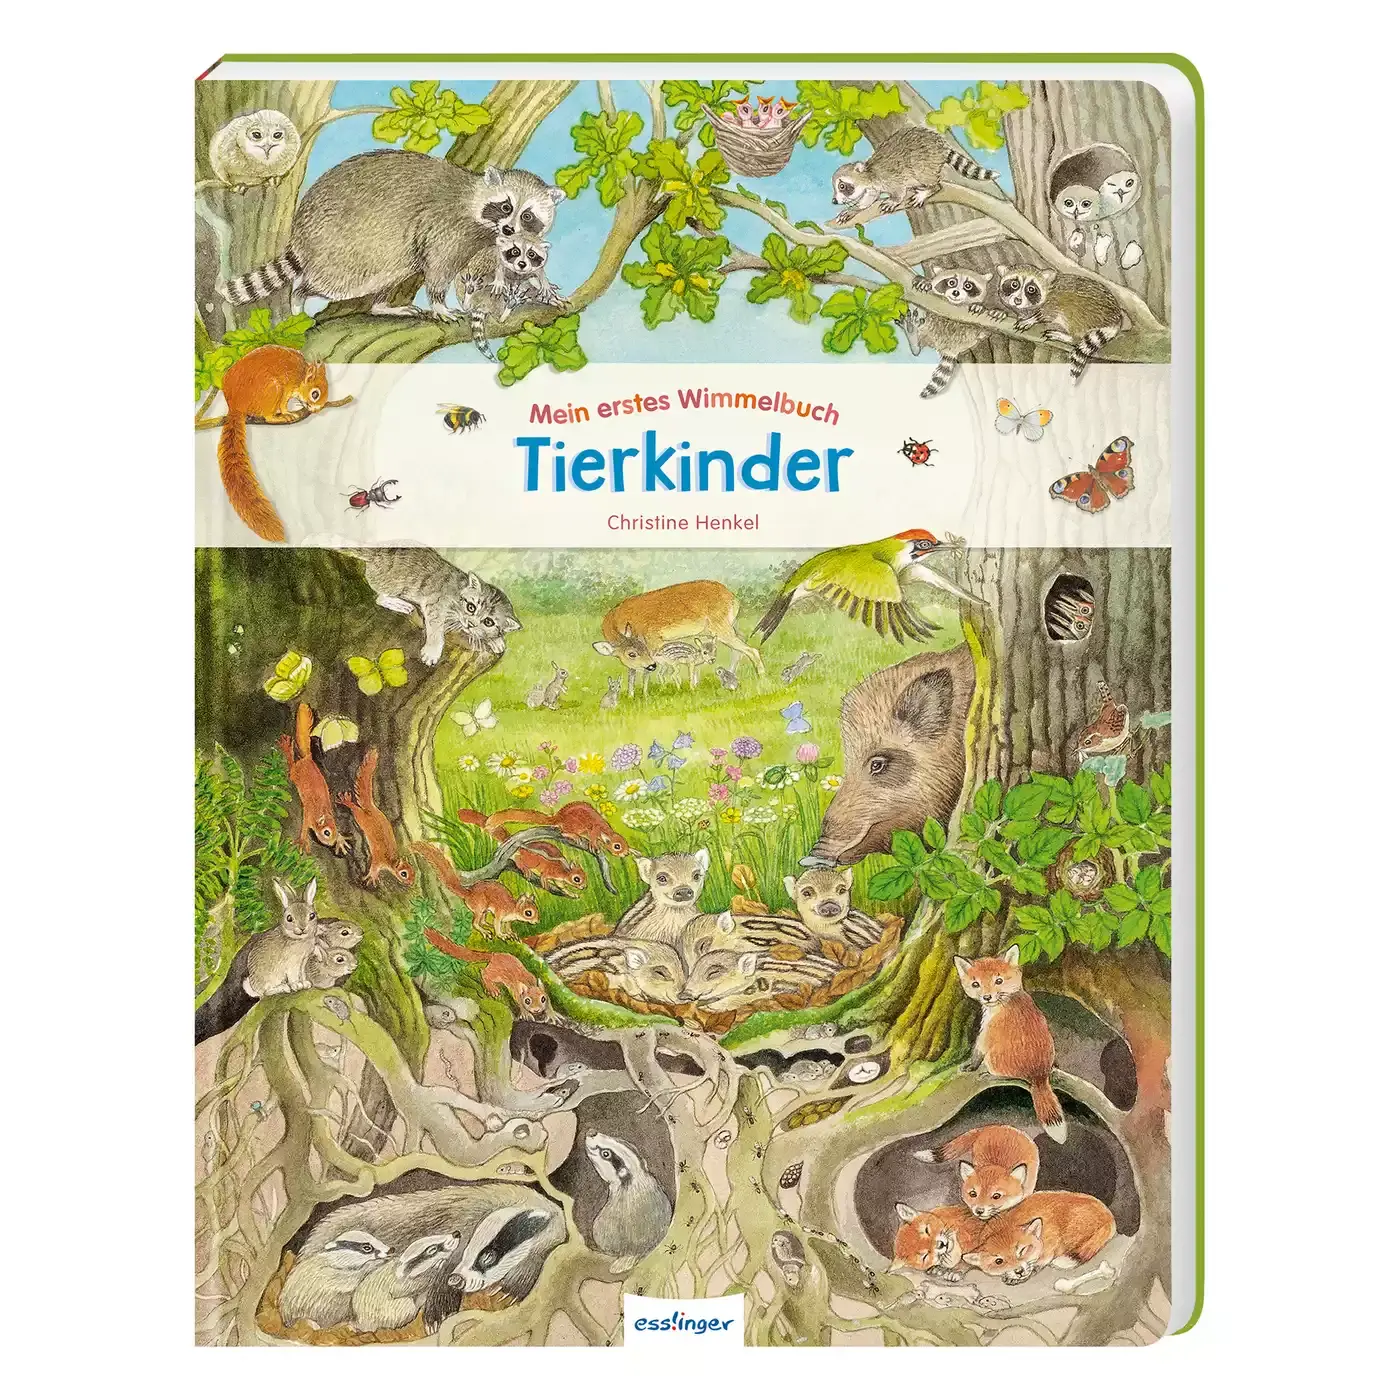 Mein erstes Wimmelbuch: Tierkinder ess!inger 2000577318001 1